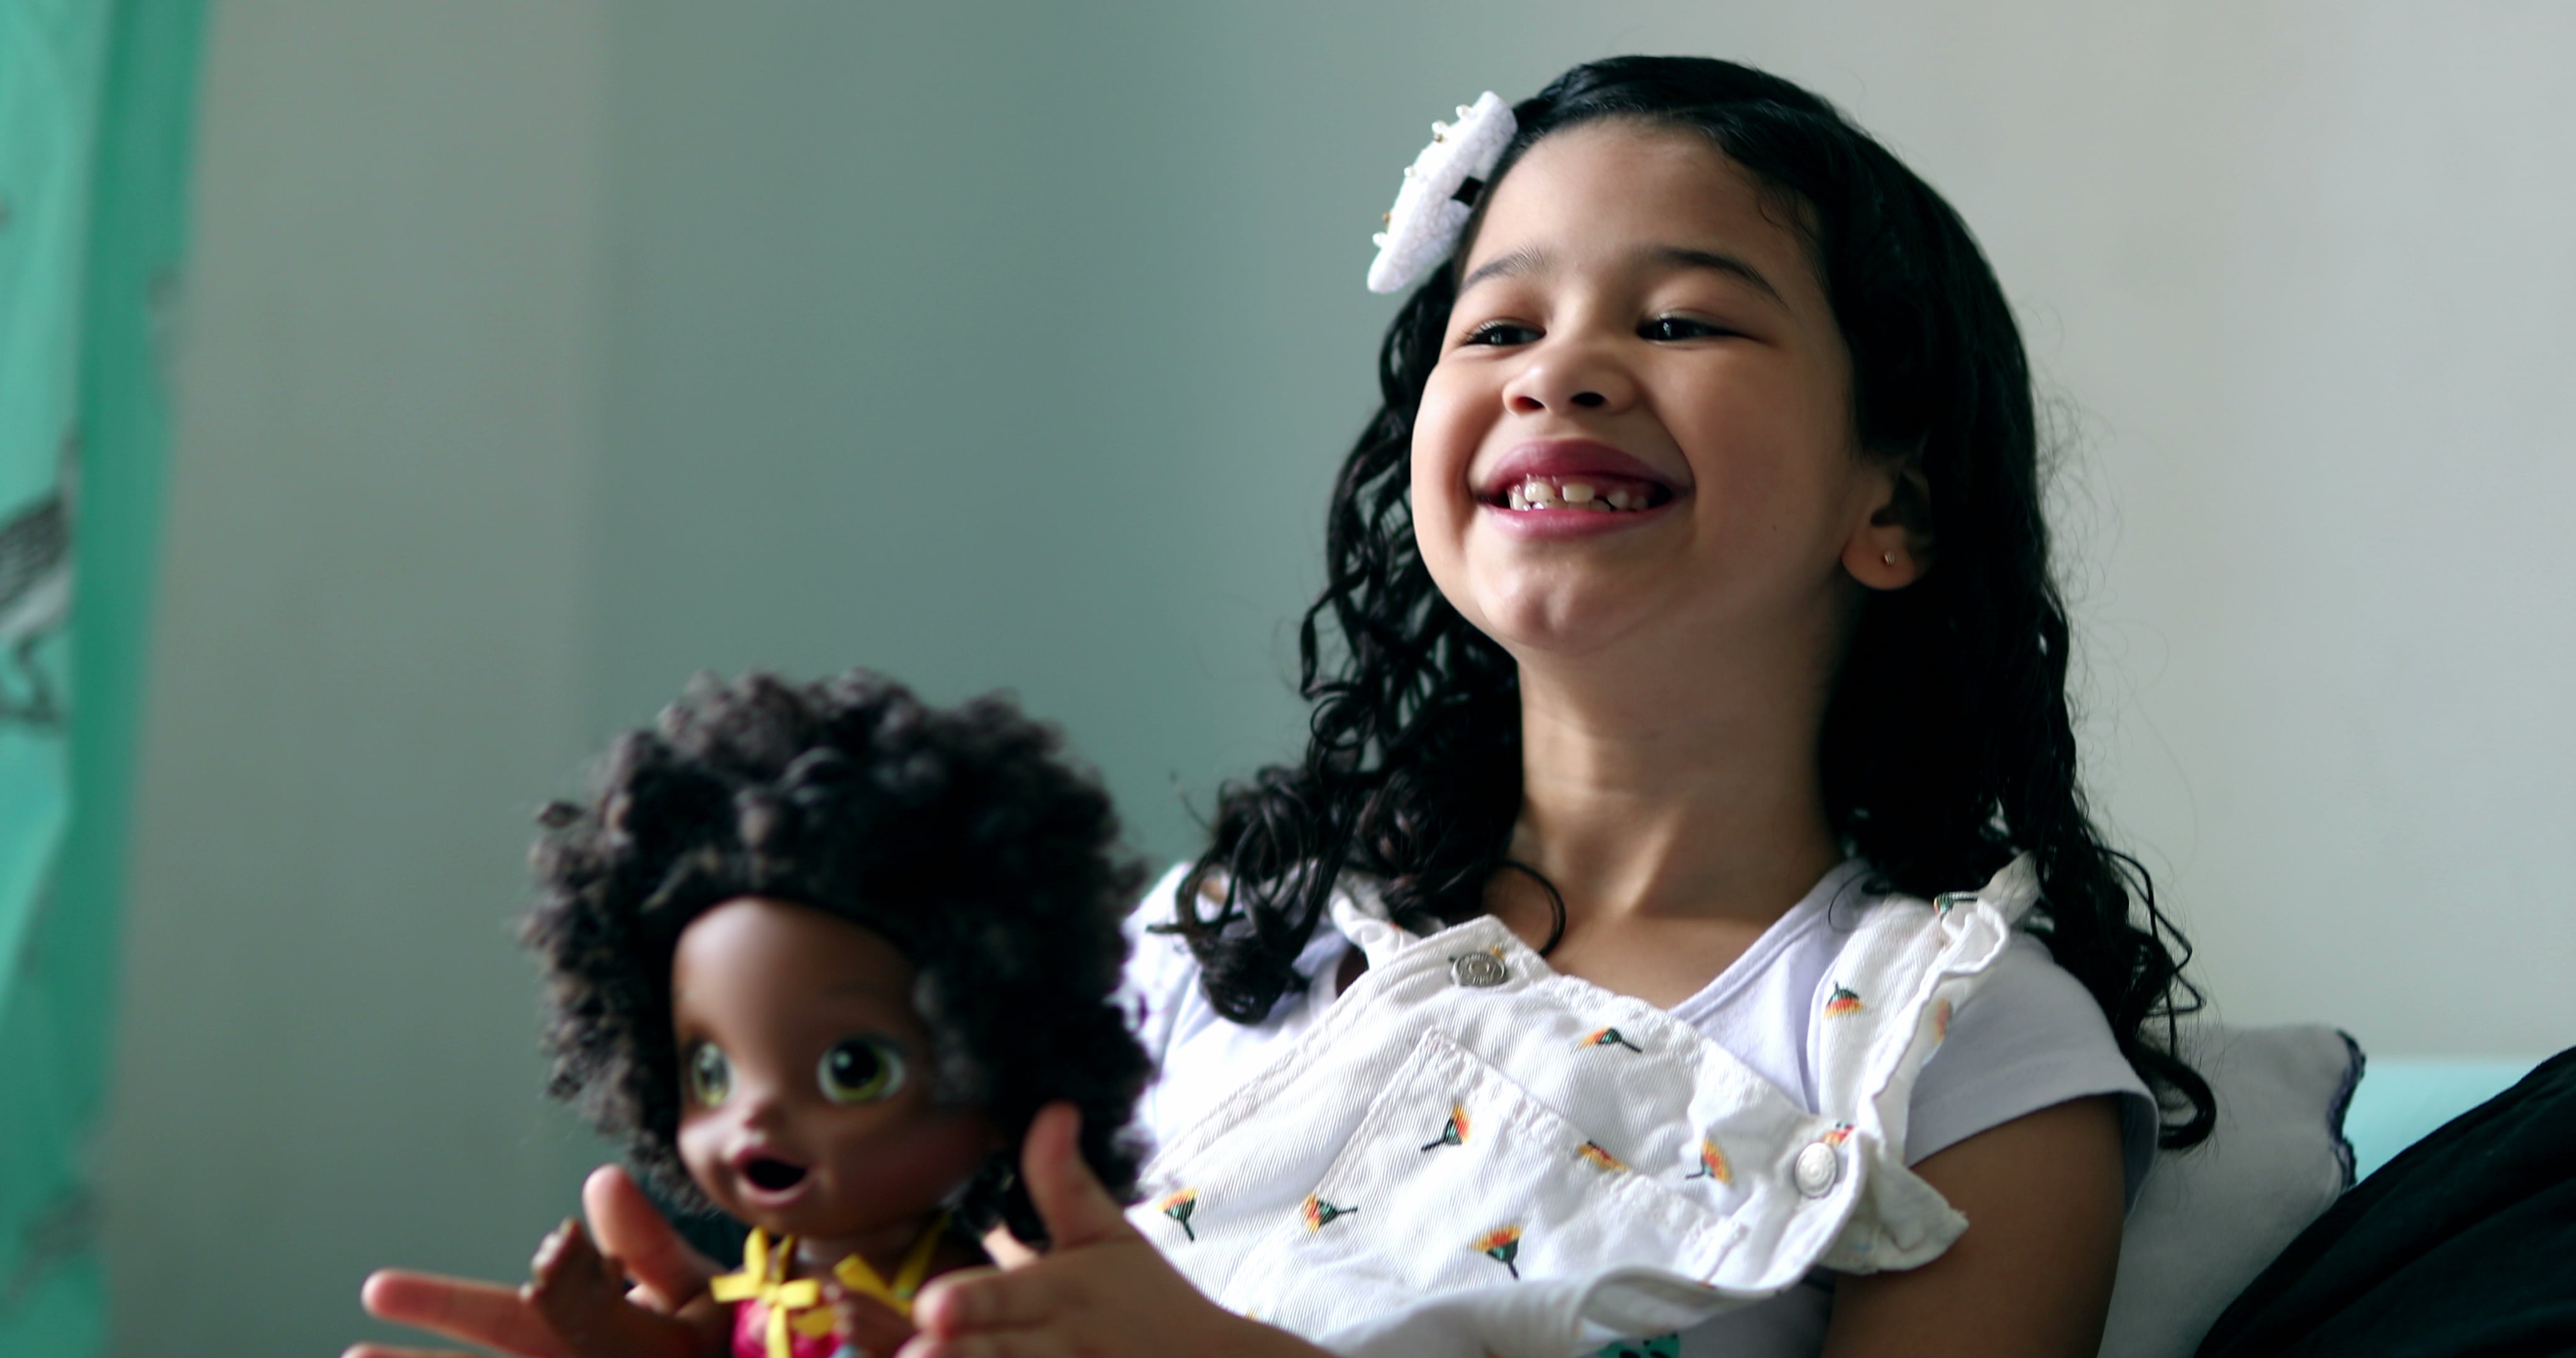 Les poupées « inclusives » ont-elles un impact positif sur les